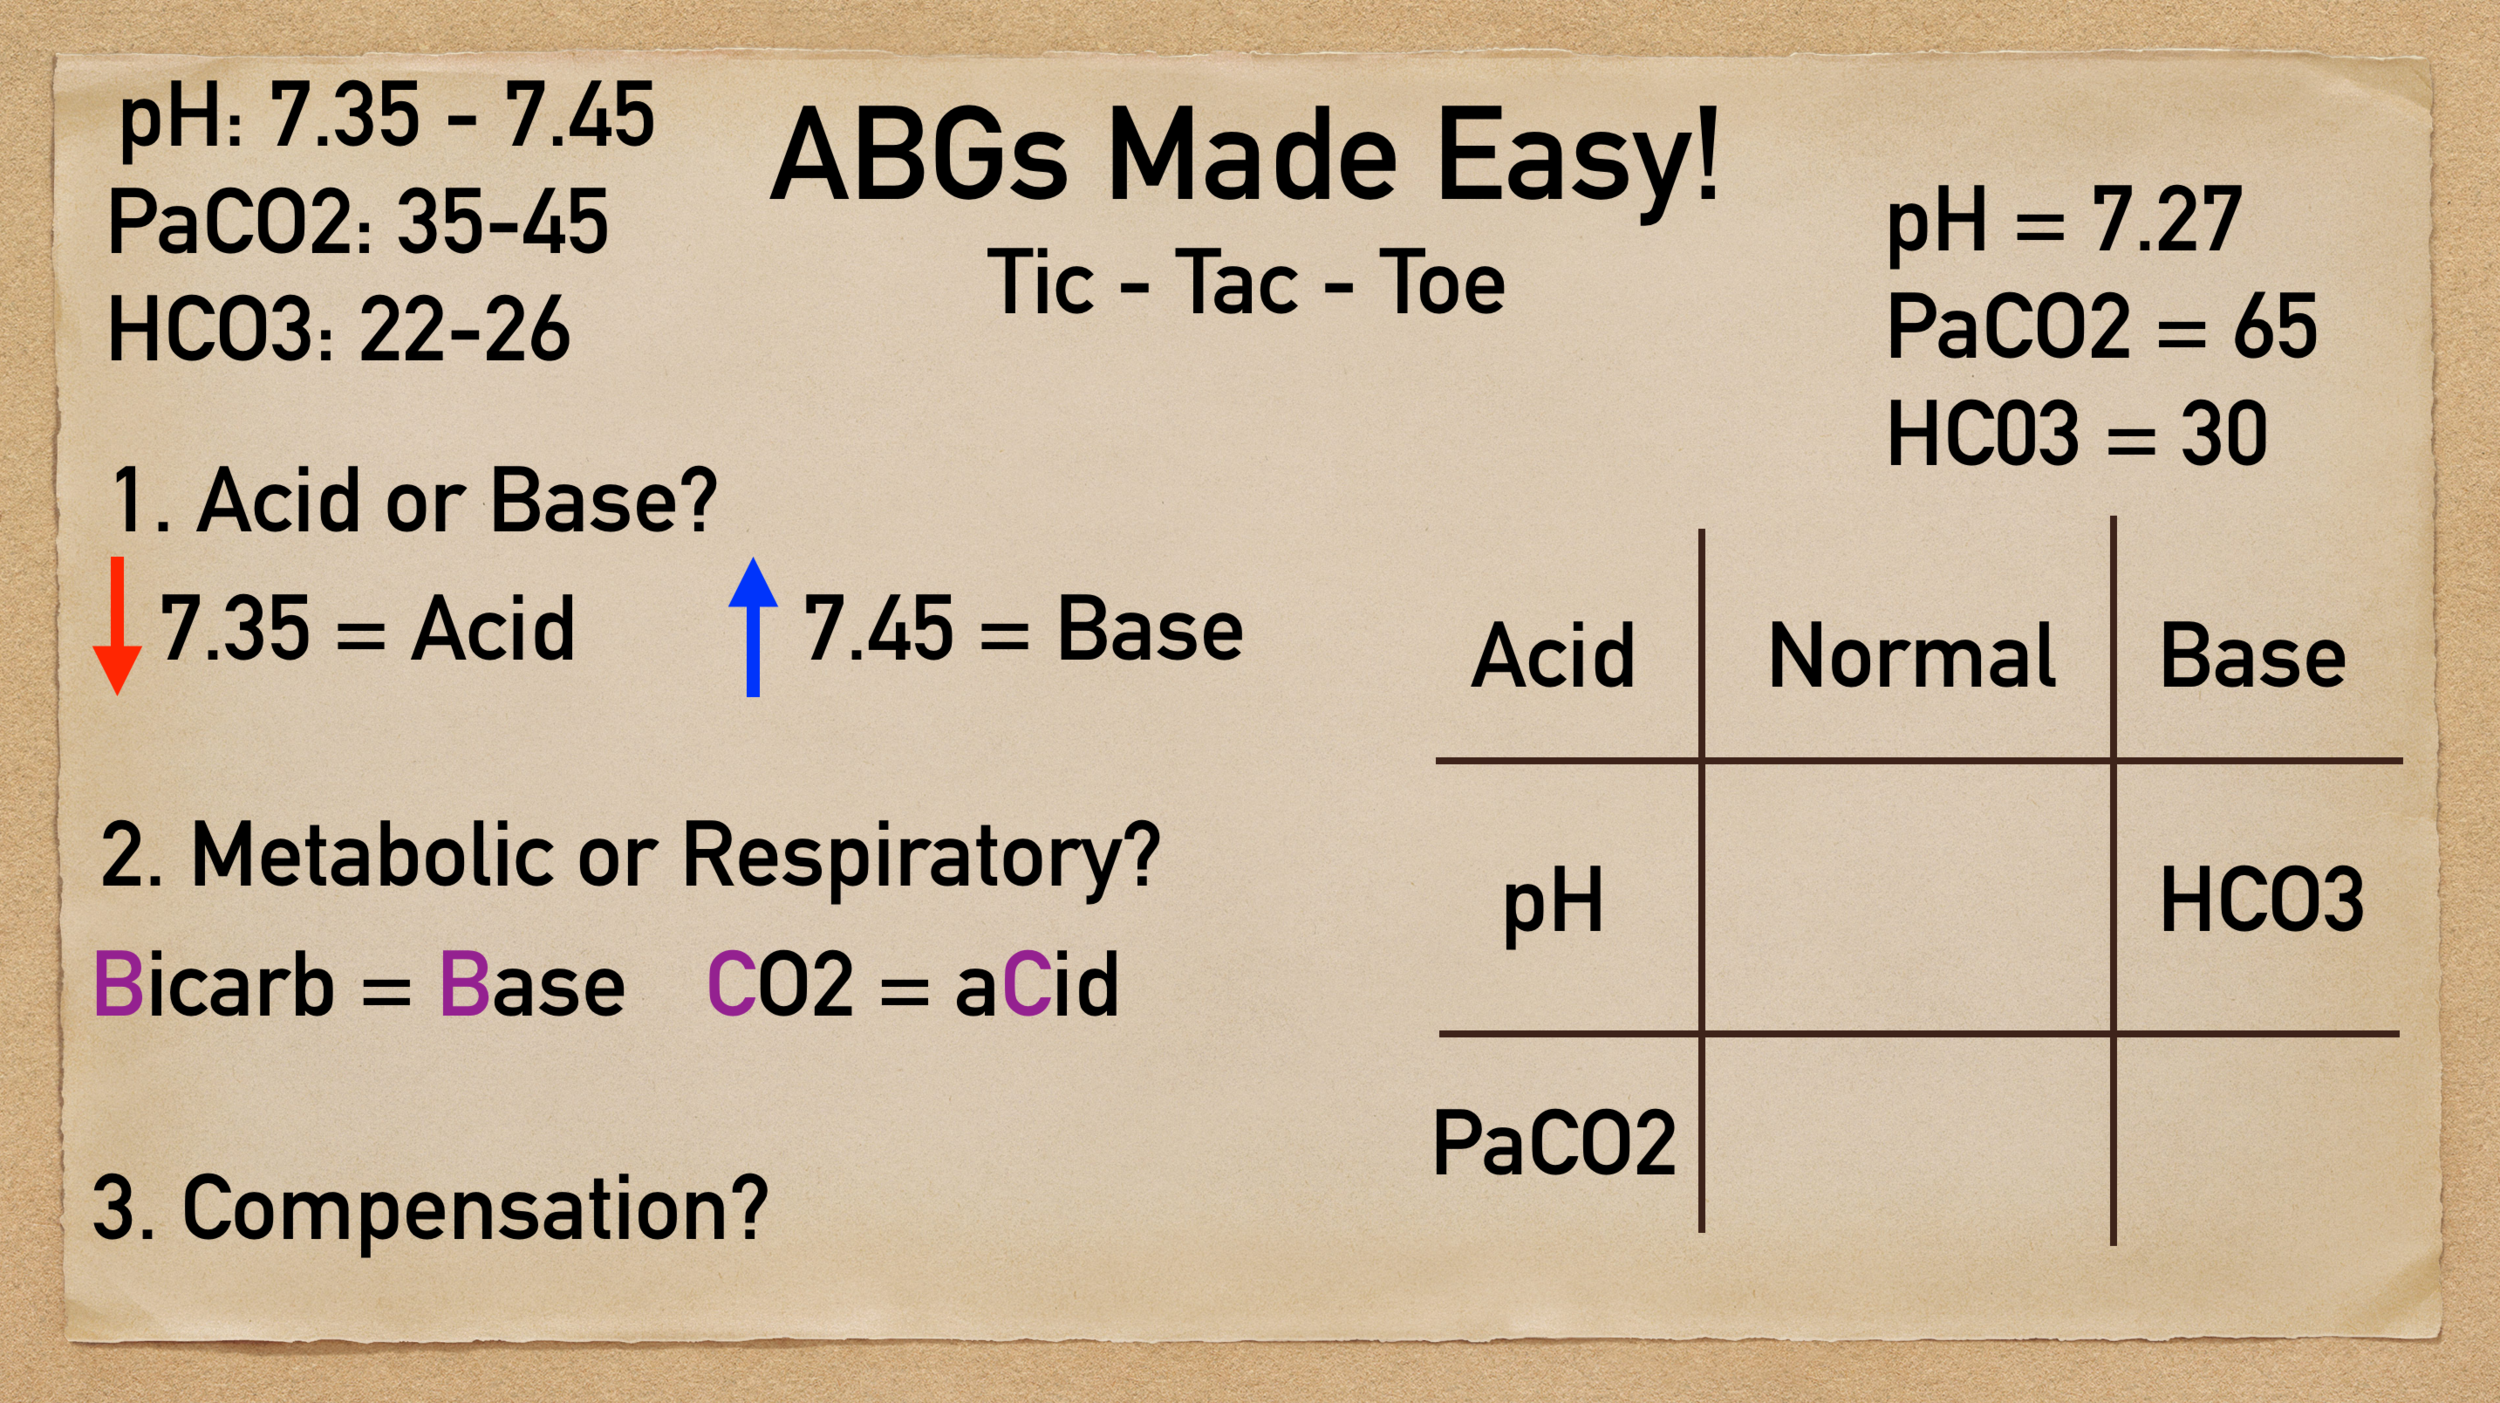 tic tac toe blood gases